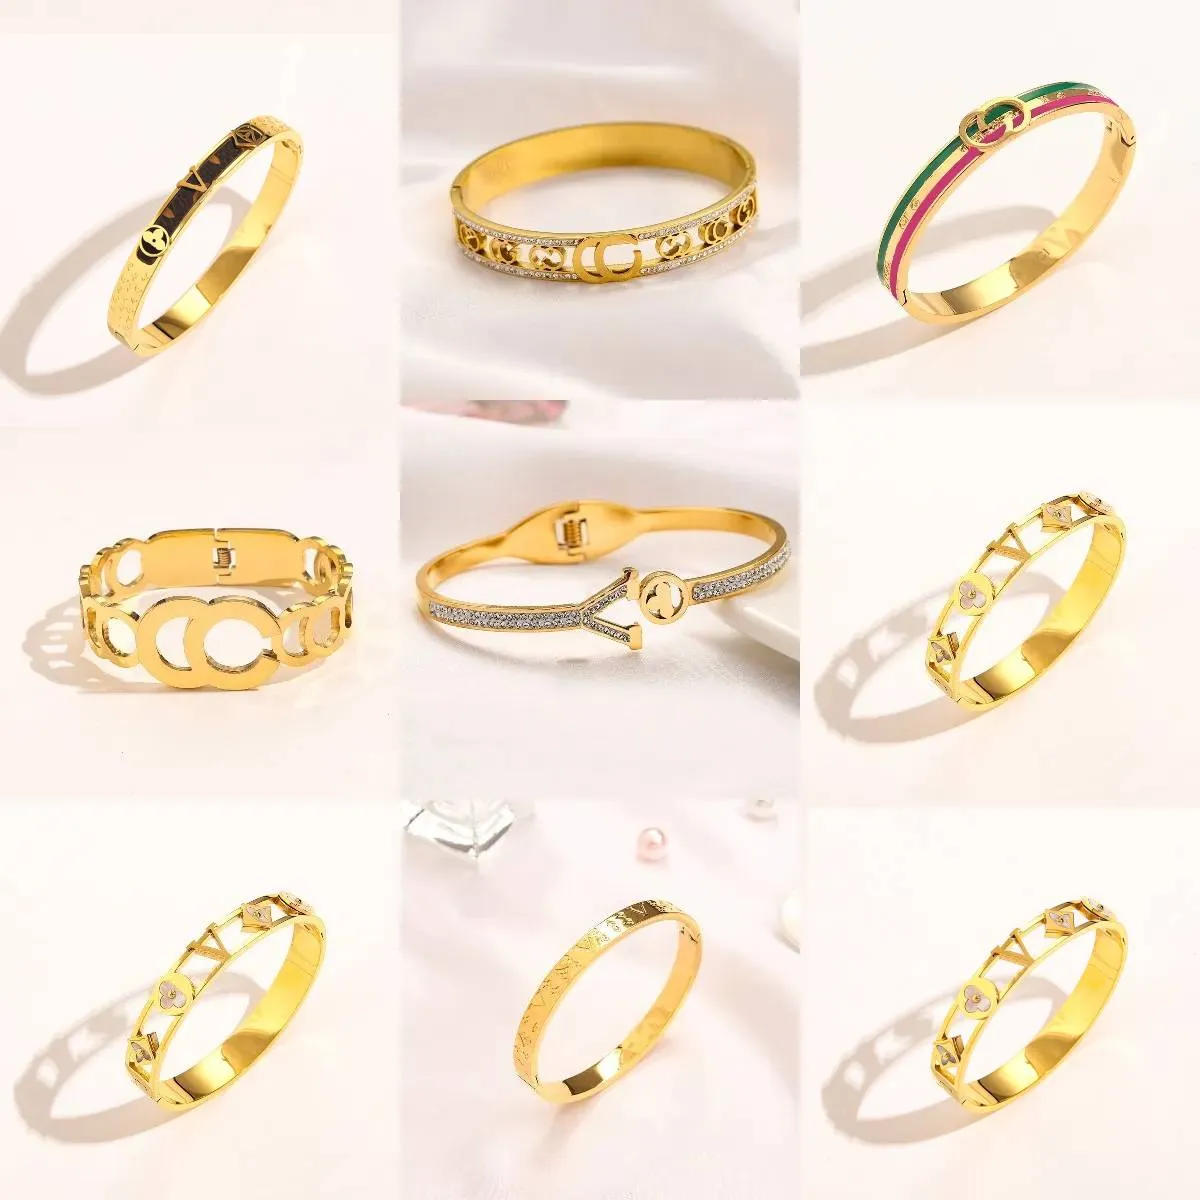 Дизайнерские ювелирные изделия, золотой браслет, дизайн букв для женщин, браслет с бриллиантами и жемчугом, модные украшения для вечеринок, свадебные аксессуары, подарки для влюбленных